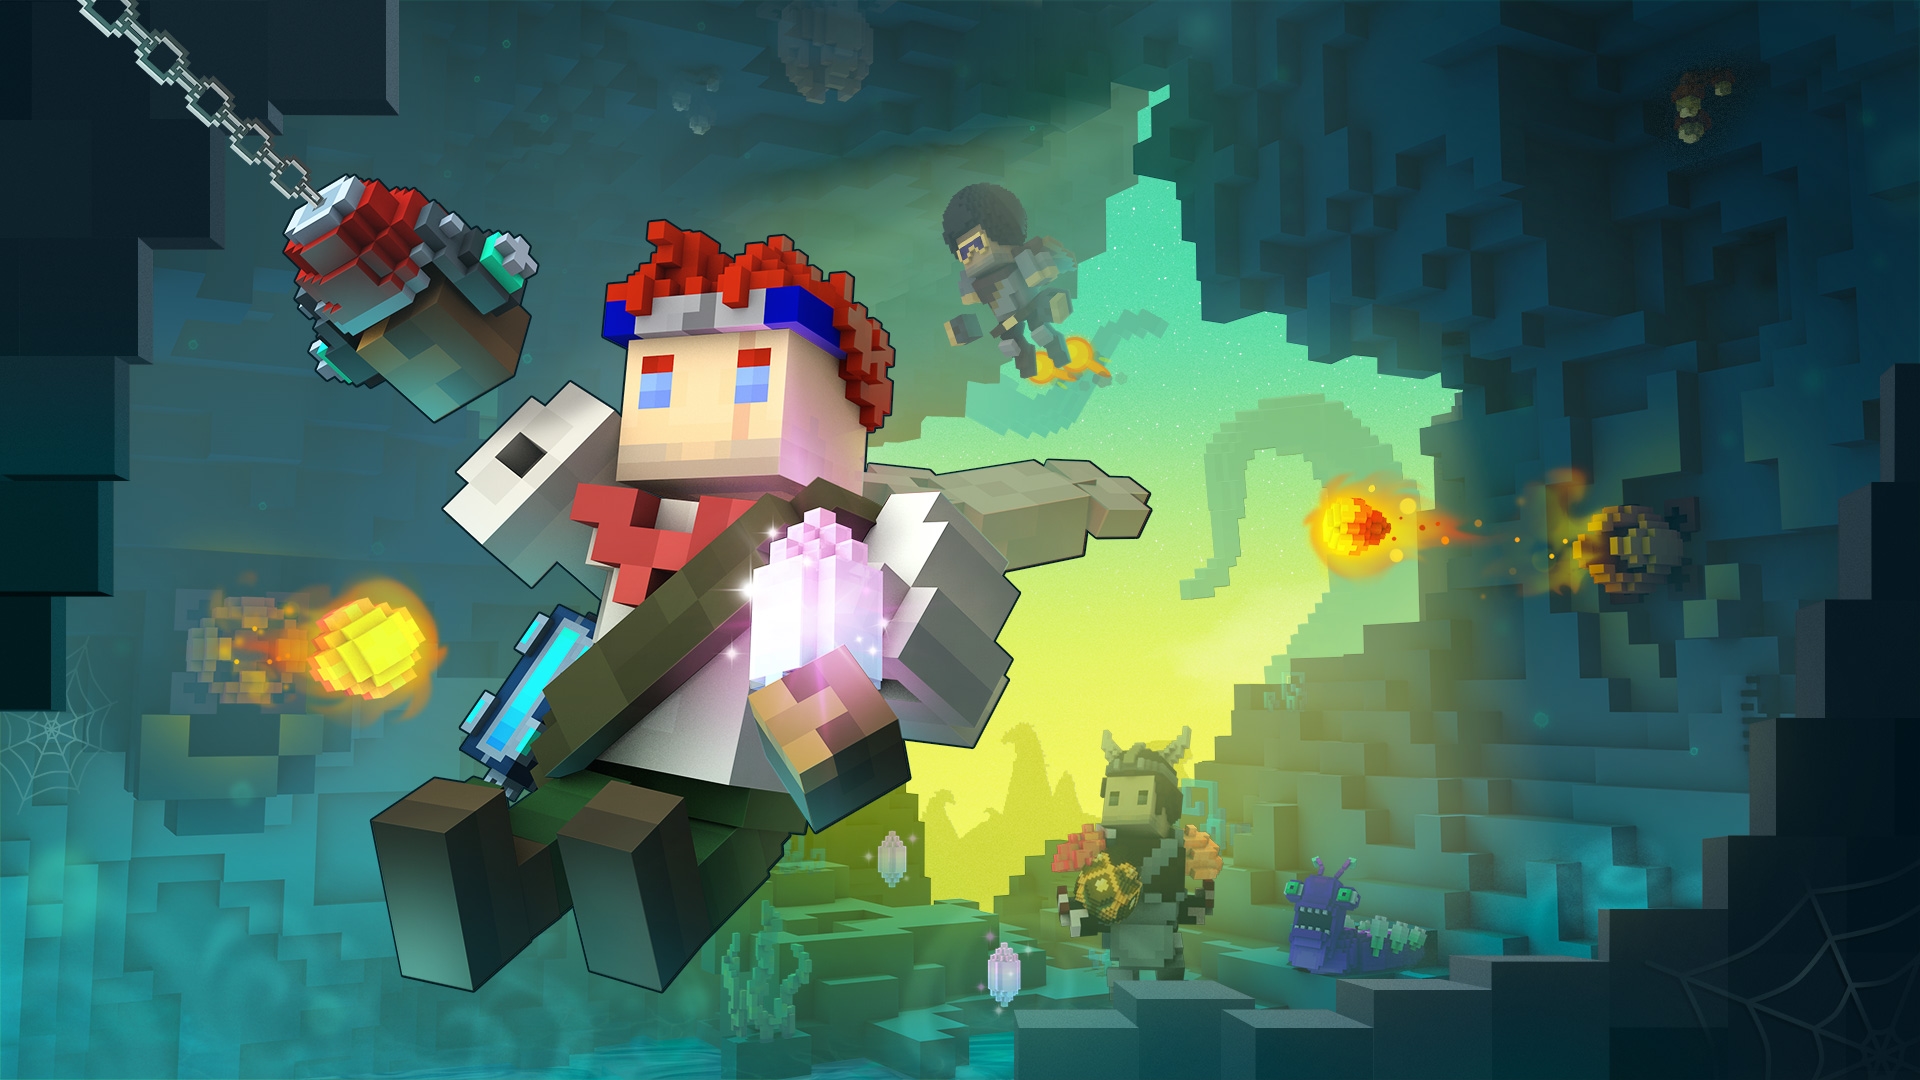 بهترین بازی های MMORPG: TROVE. تصویر مردی مسدود را نشان می دهد که از طریق یک غار در حال چرخش است